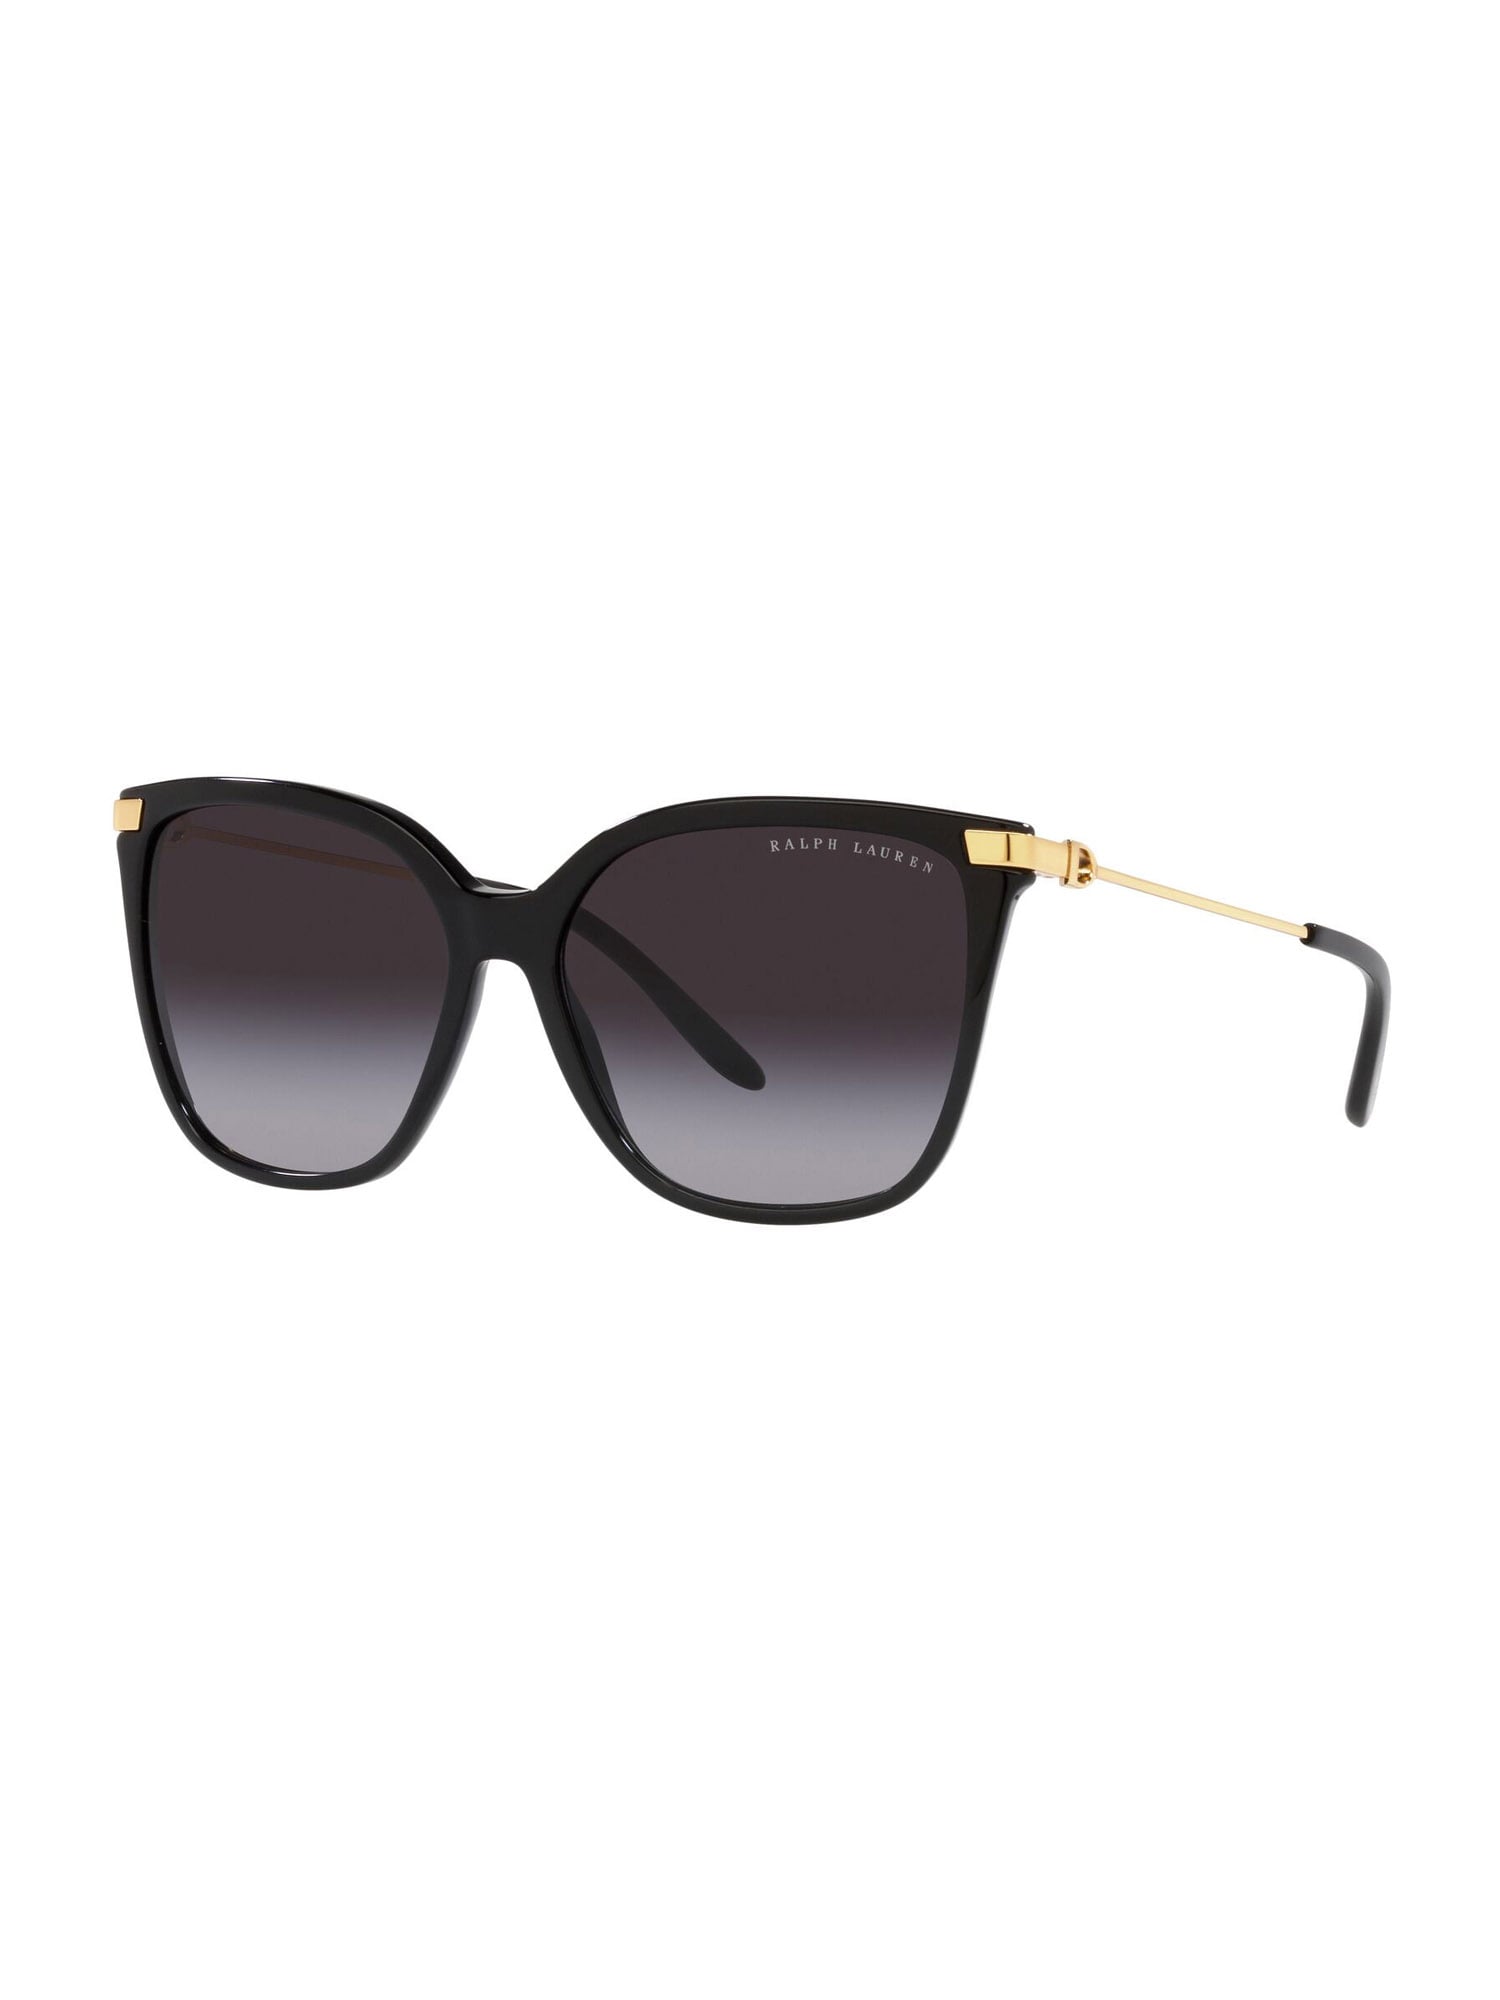 Slnečné okuliare RL8209 zlatá čierna Ralph Lauren